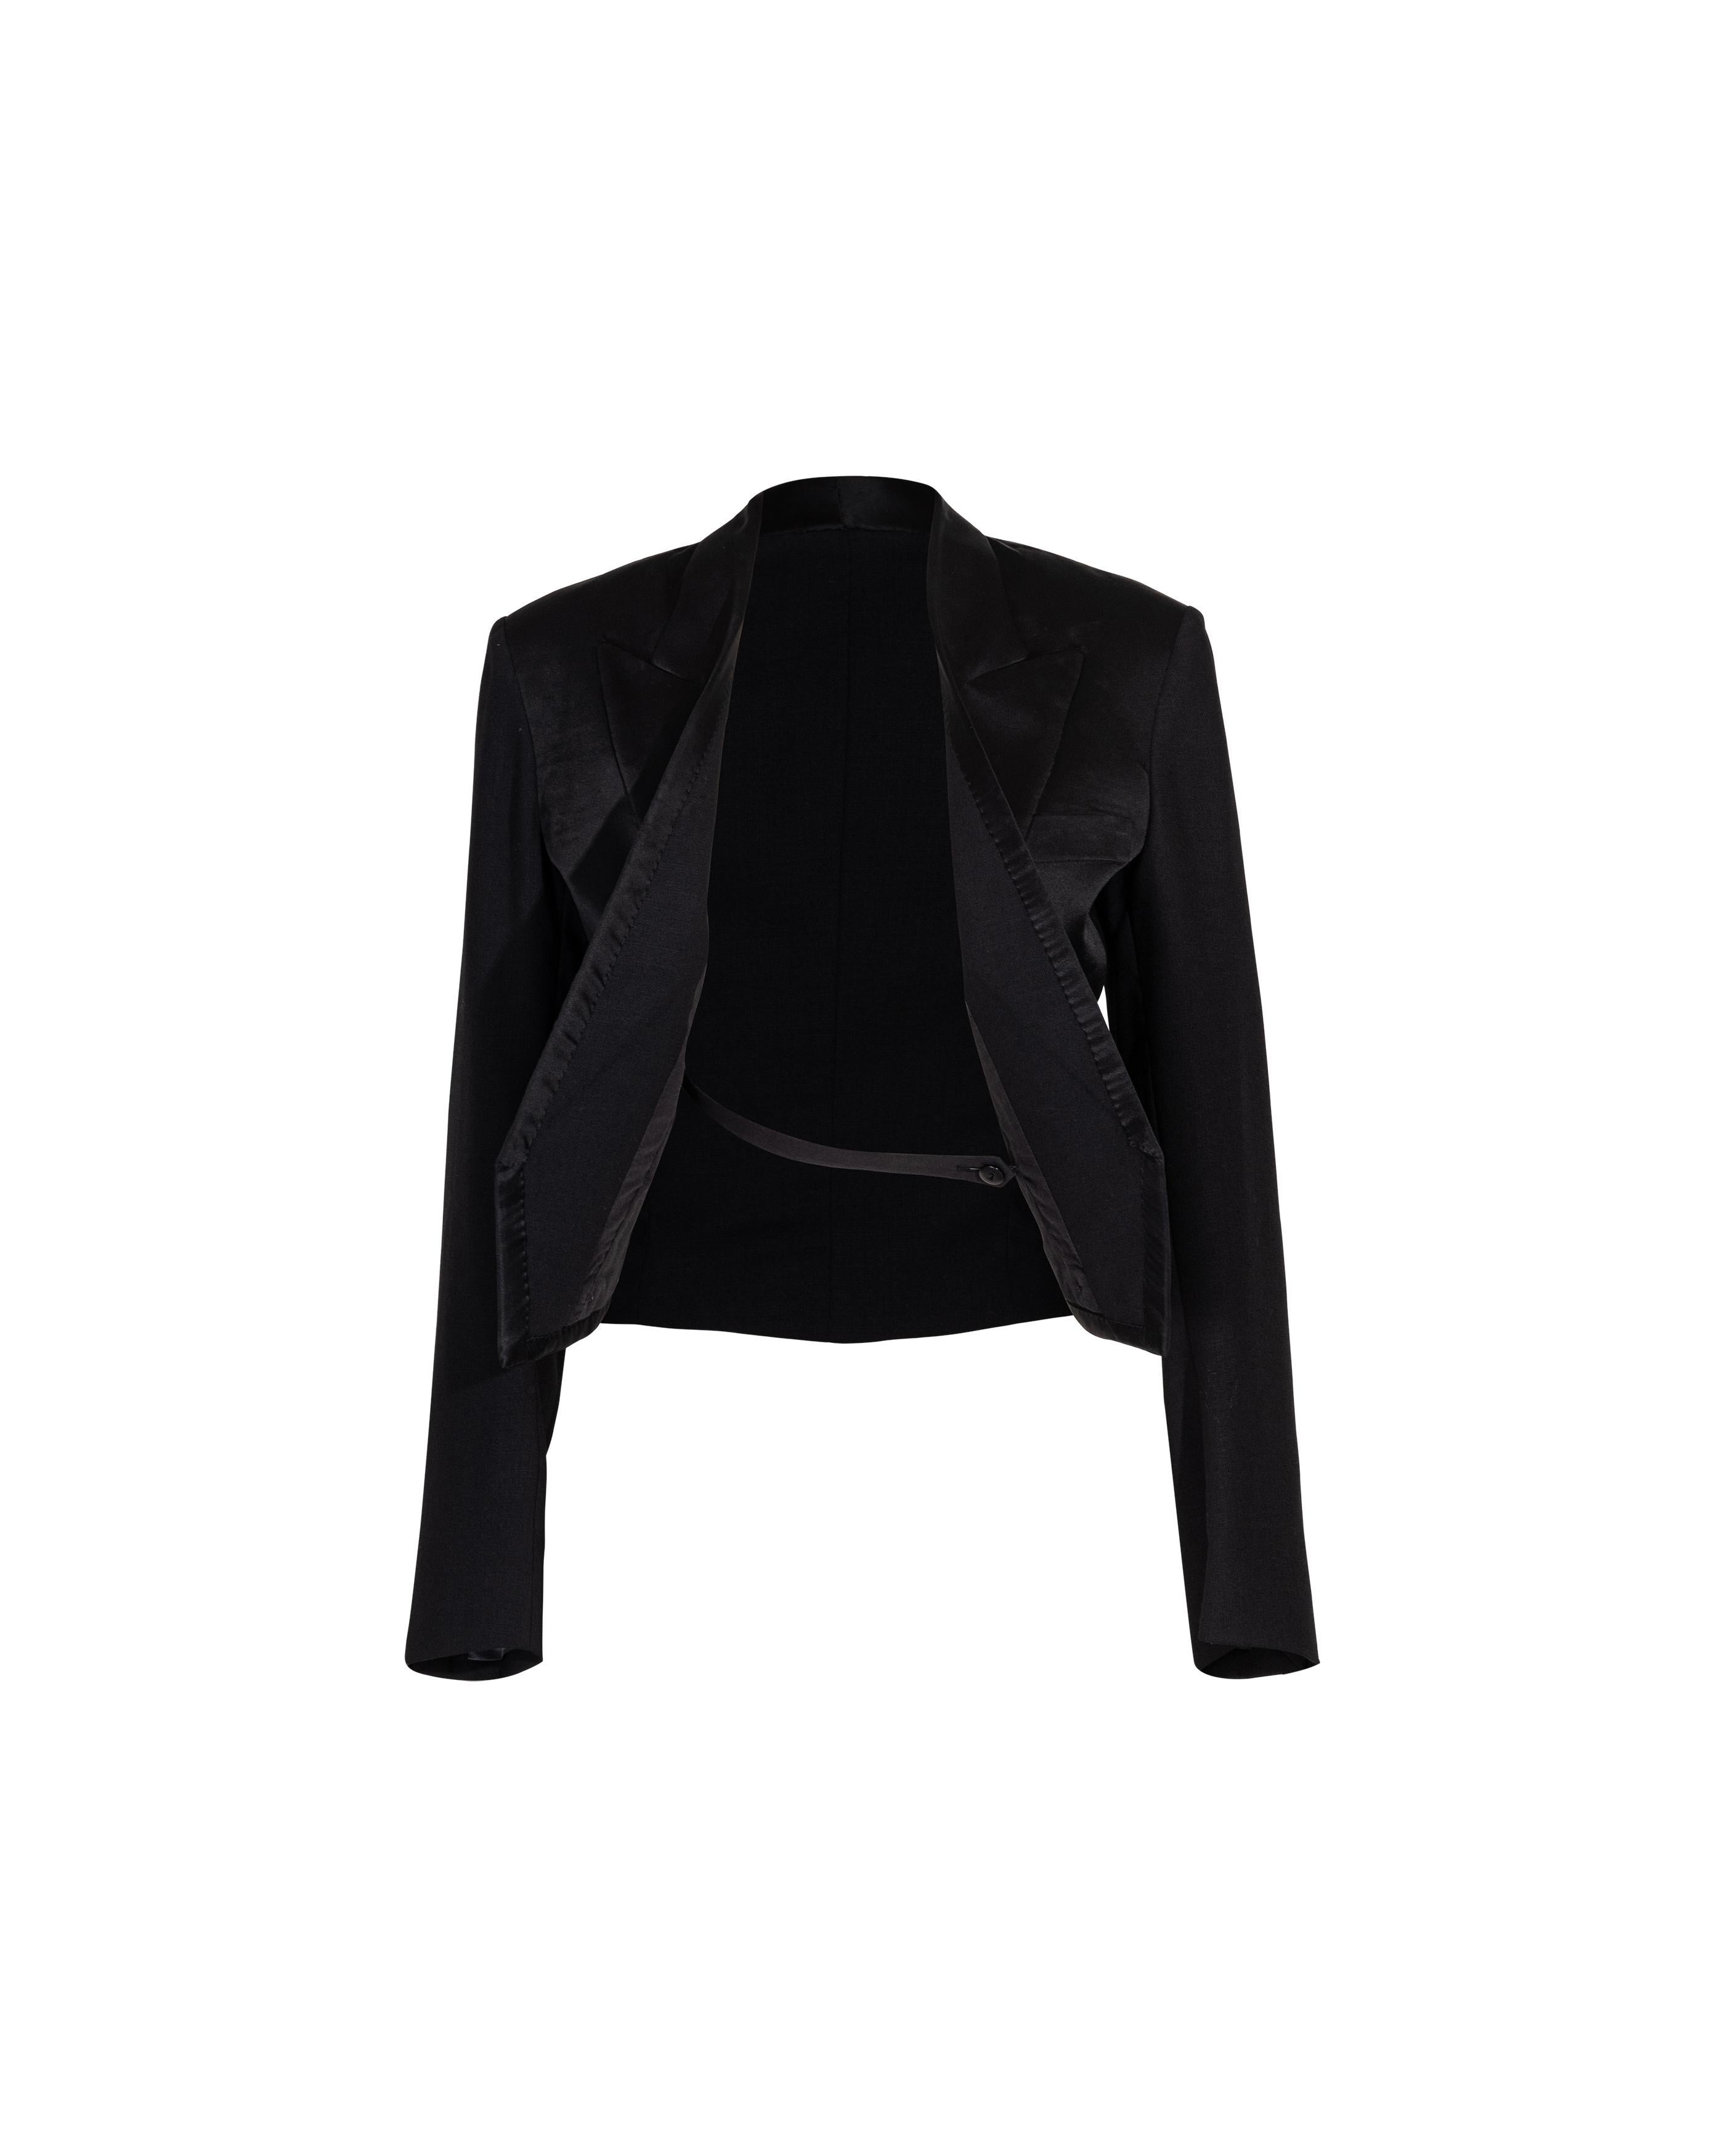 S/S 2002 Maison Martin Margiela Black Cropped Wool Tuxedo Jacket For Sale 2